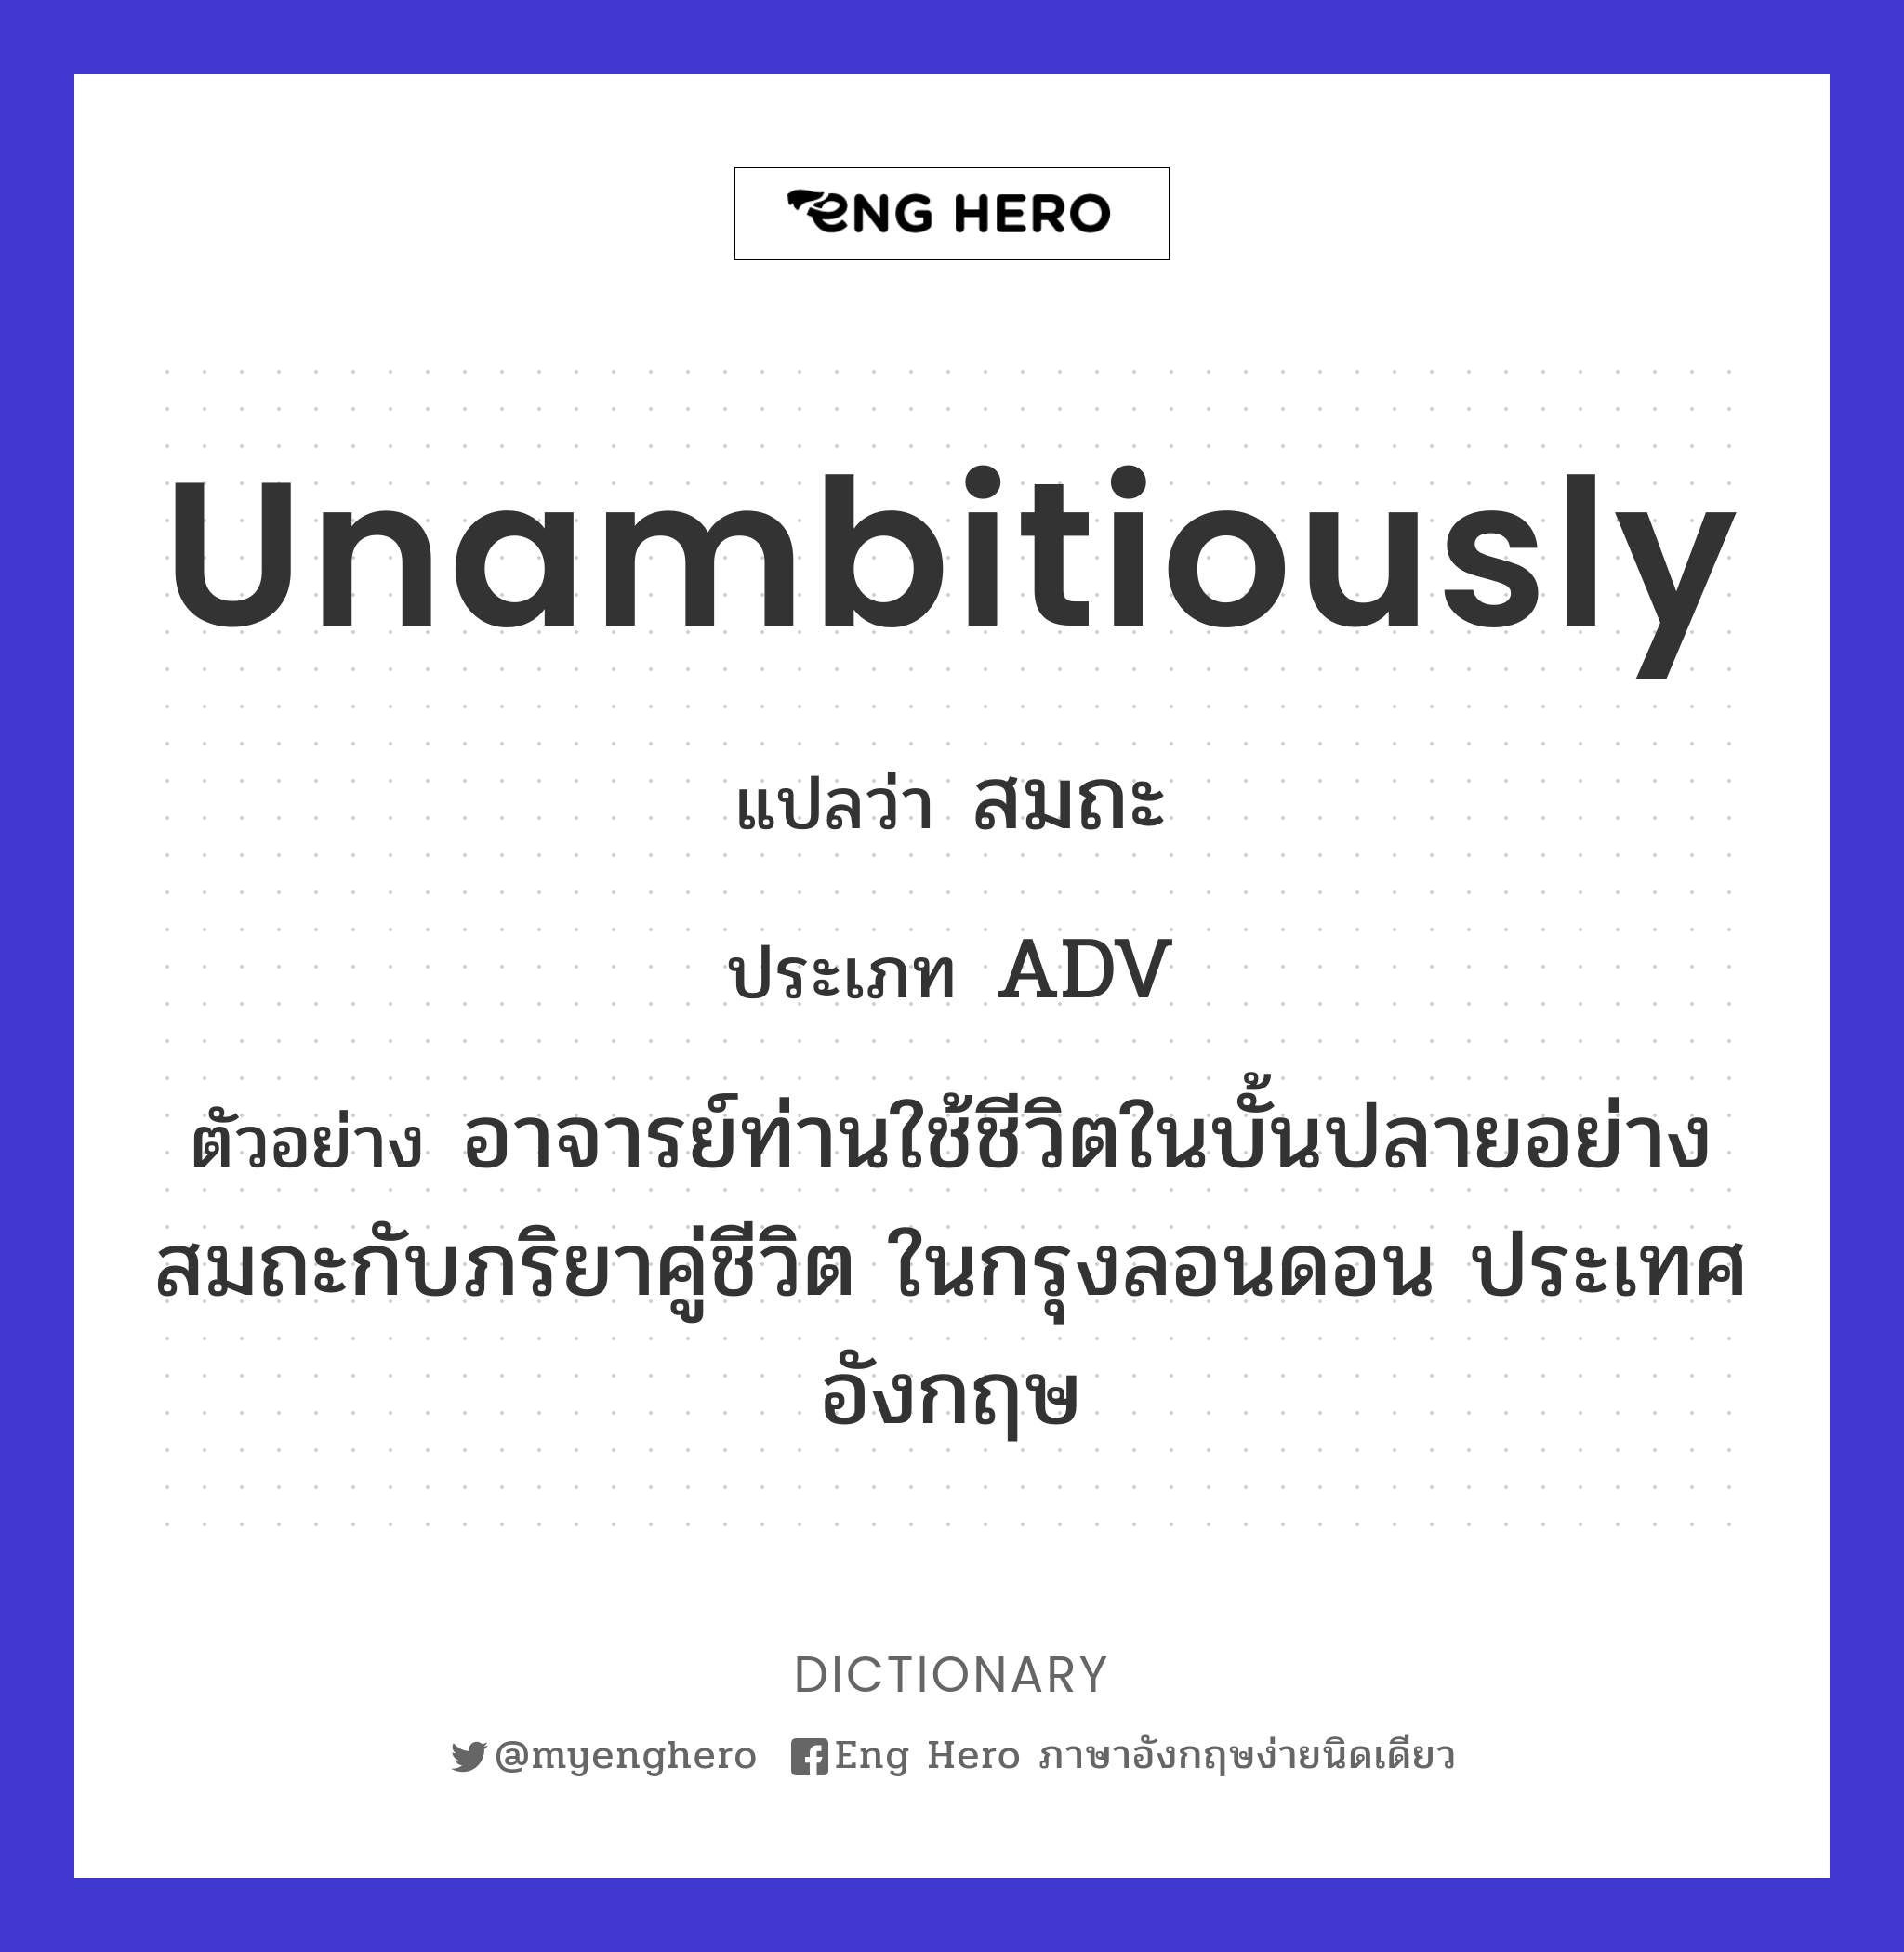 unambitiously